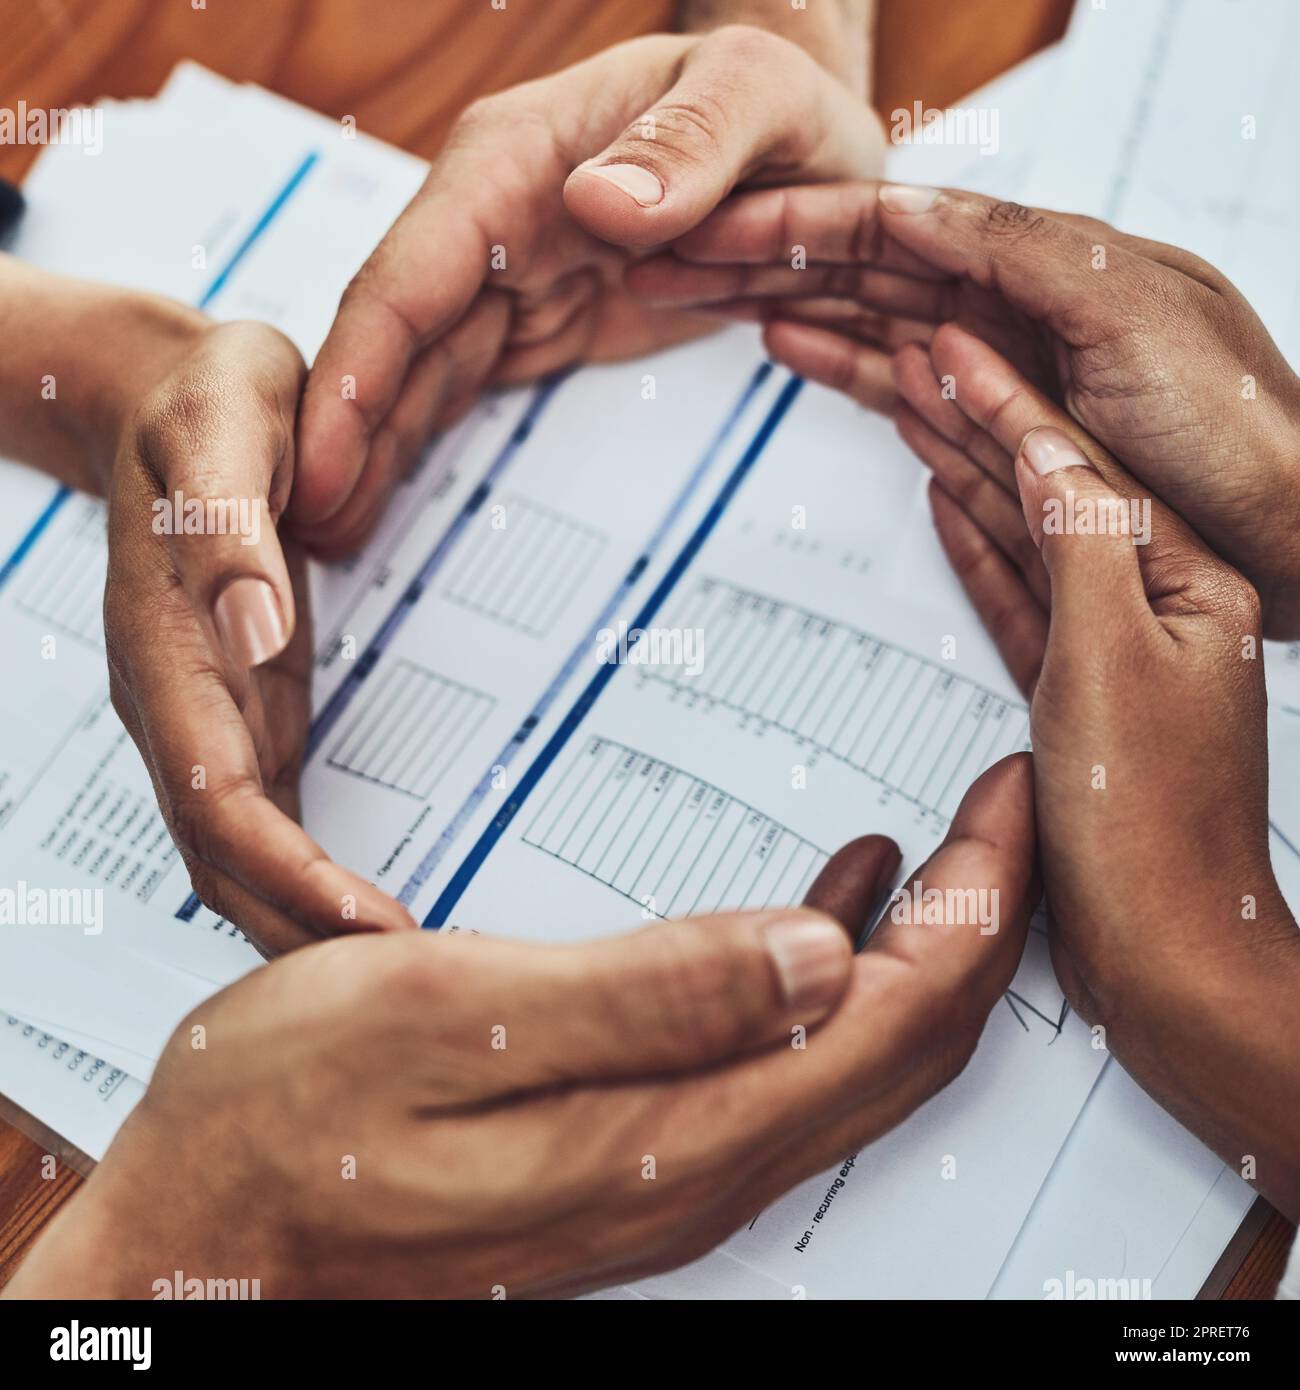 Die Hände bilden einen Kreis für Teamarbeit, Community und Zusammenarbeit des Business Teams. Über der Sicht der Arbeiter, die Vertrauen und Einigkeit zeigen. Bürounterstützung durch eine Gruppe von Kollegen Stockfoto